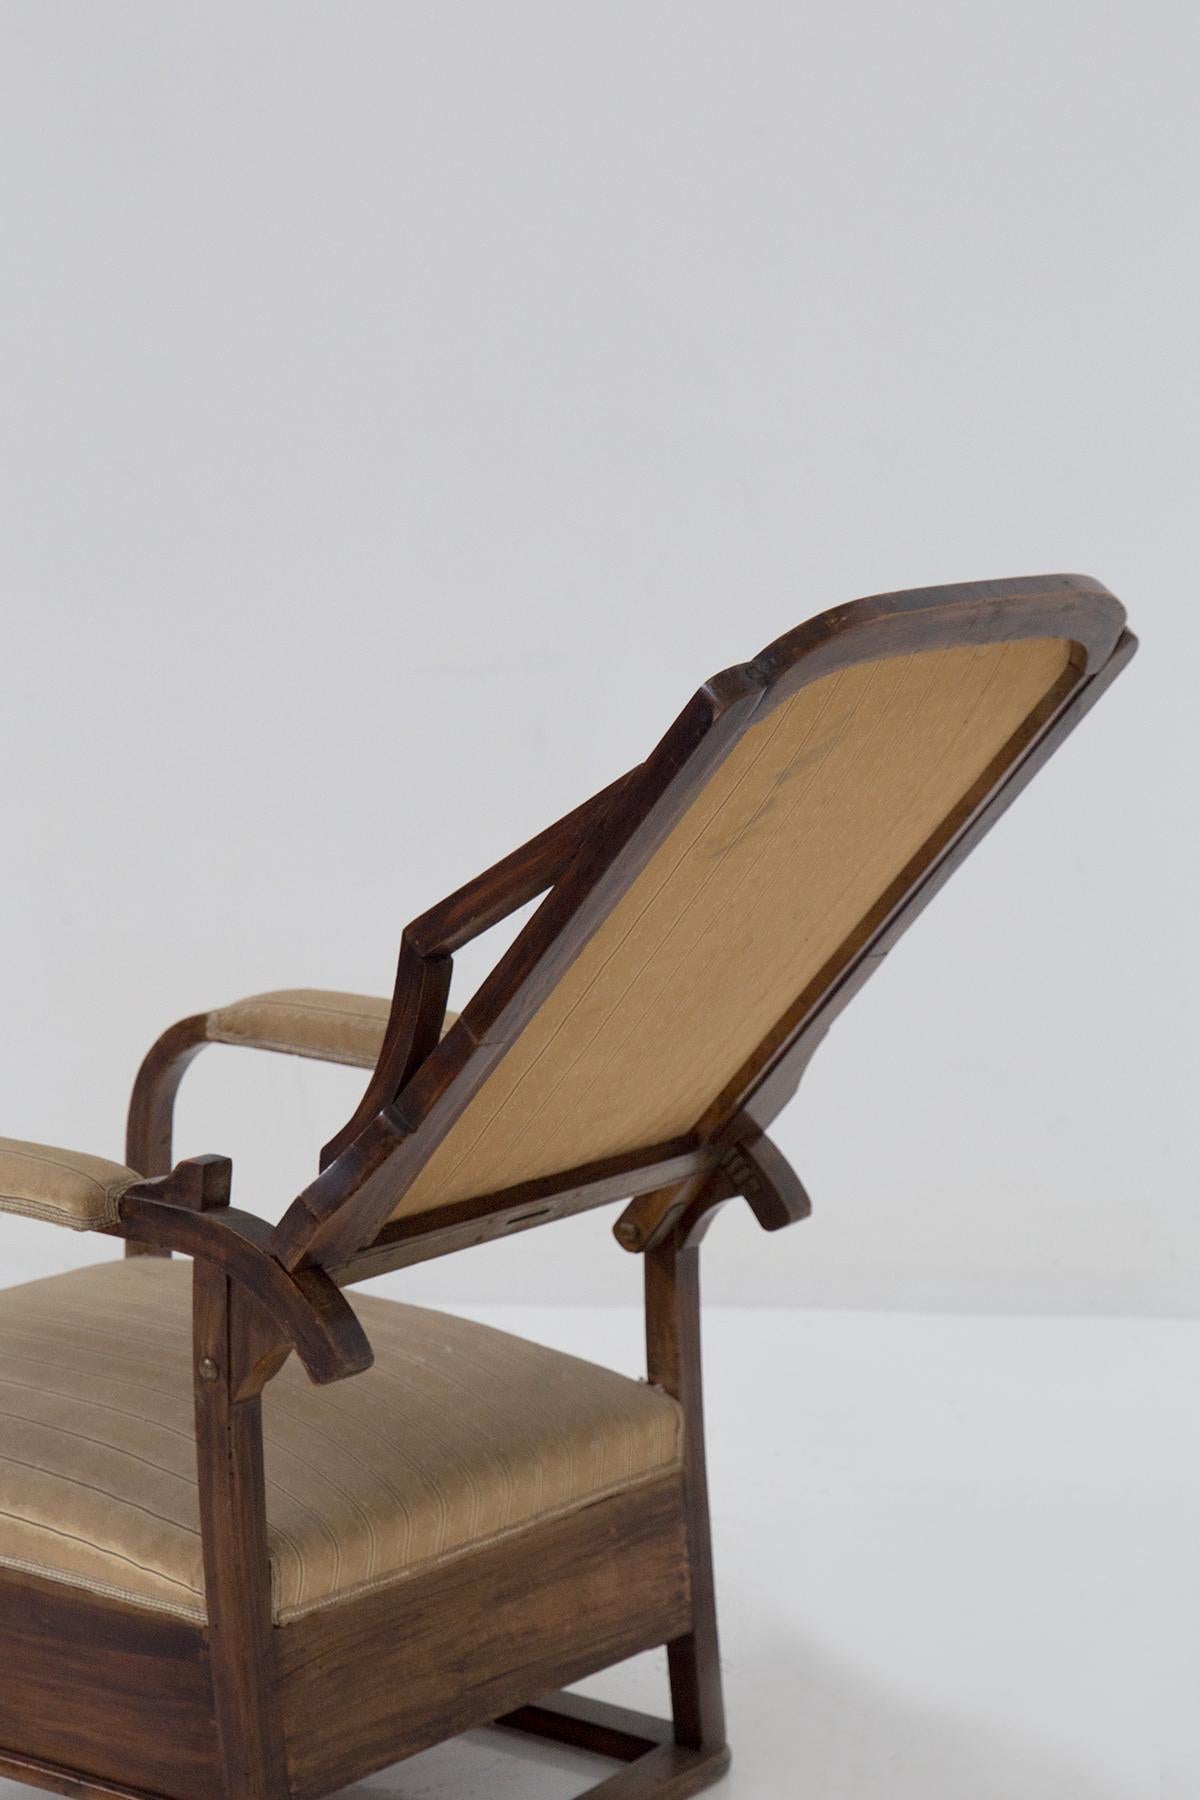 Italian Art Nouveau period armchair in original fabric For Sale 1